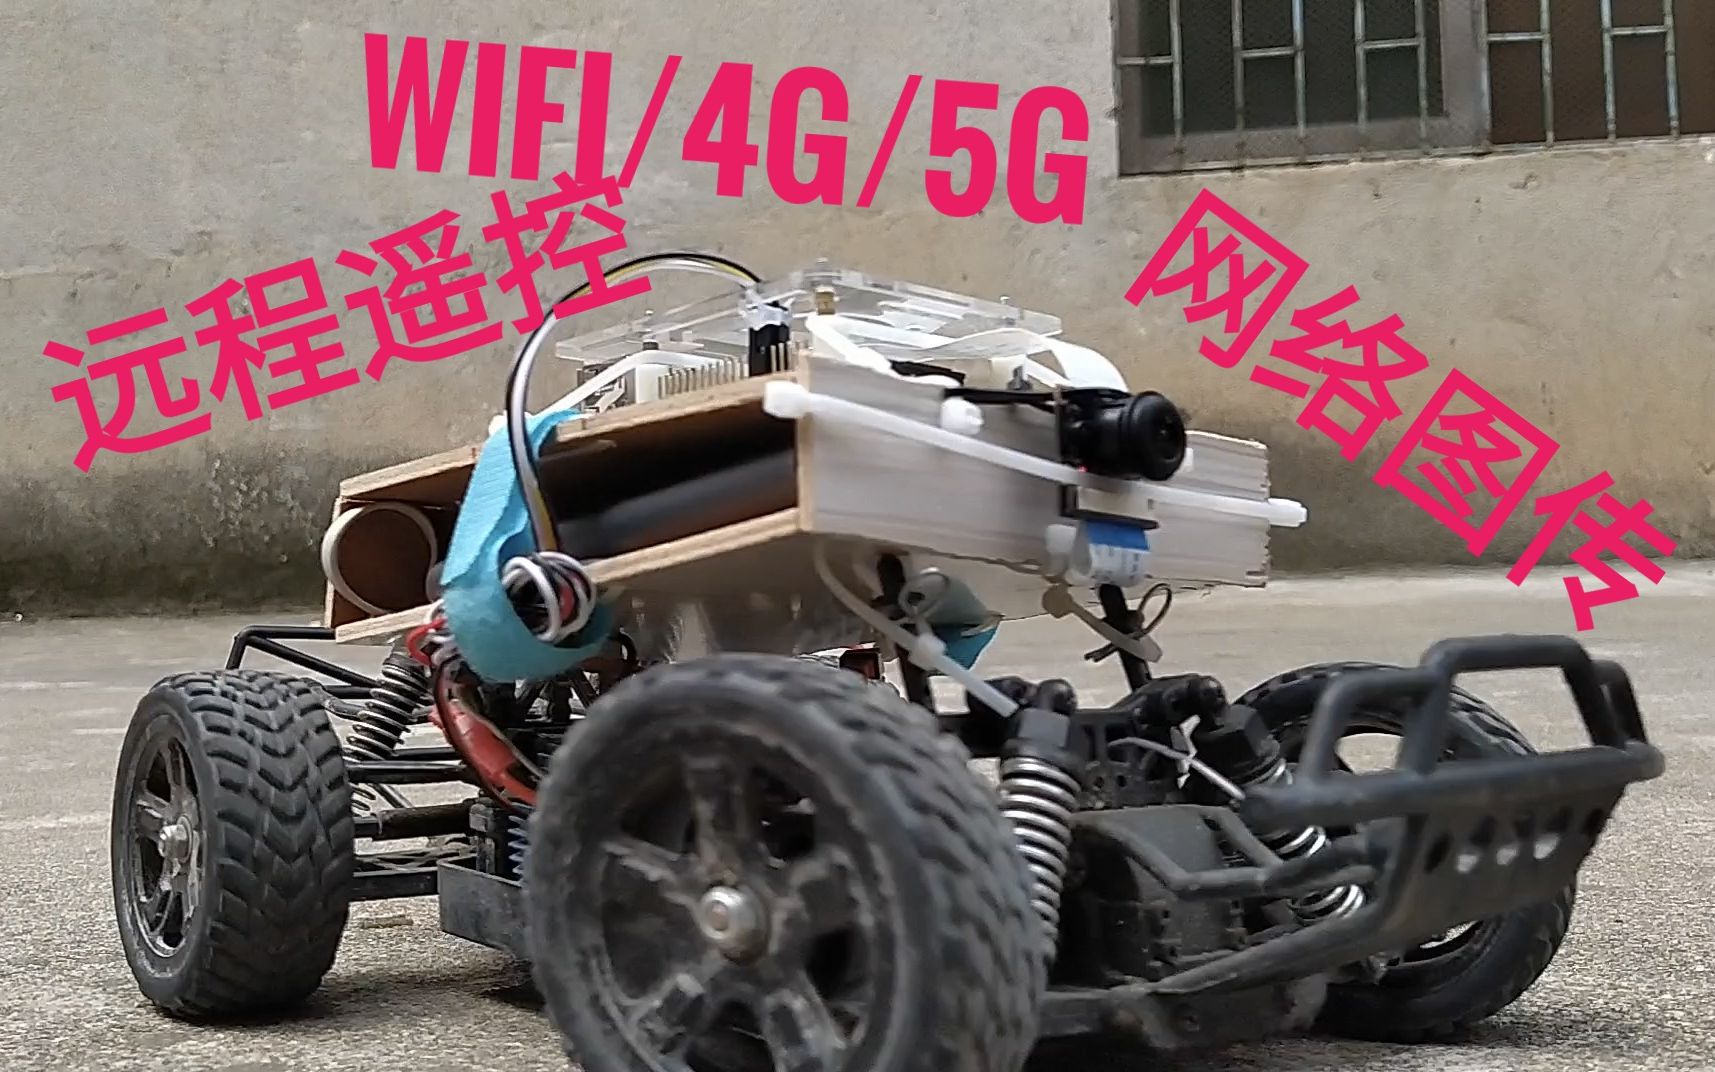 WiFi/4G/5G 网络遥控车制作教程